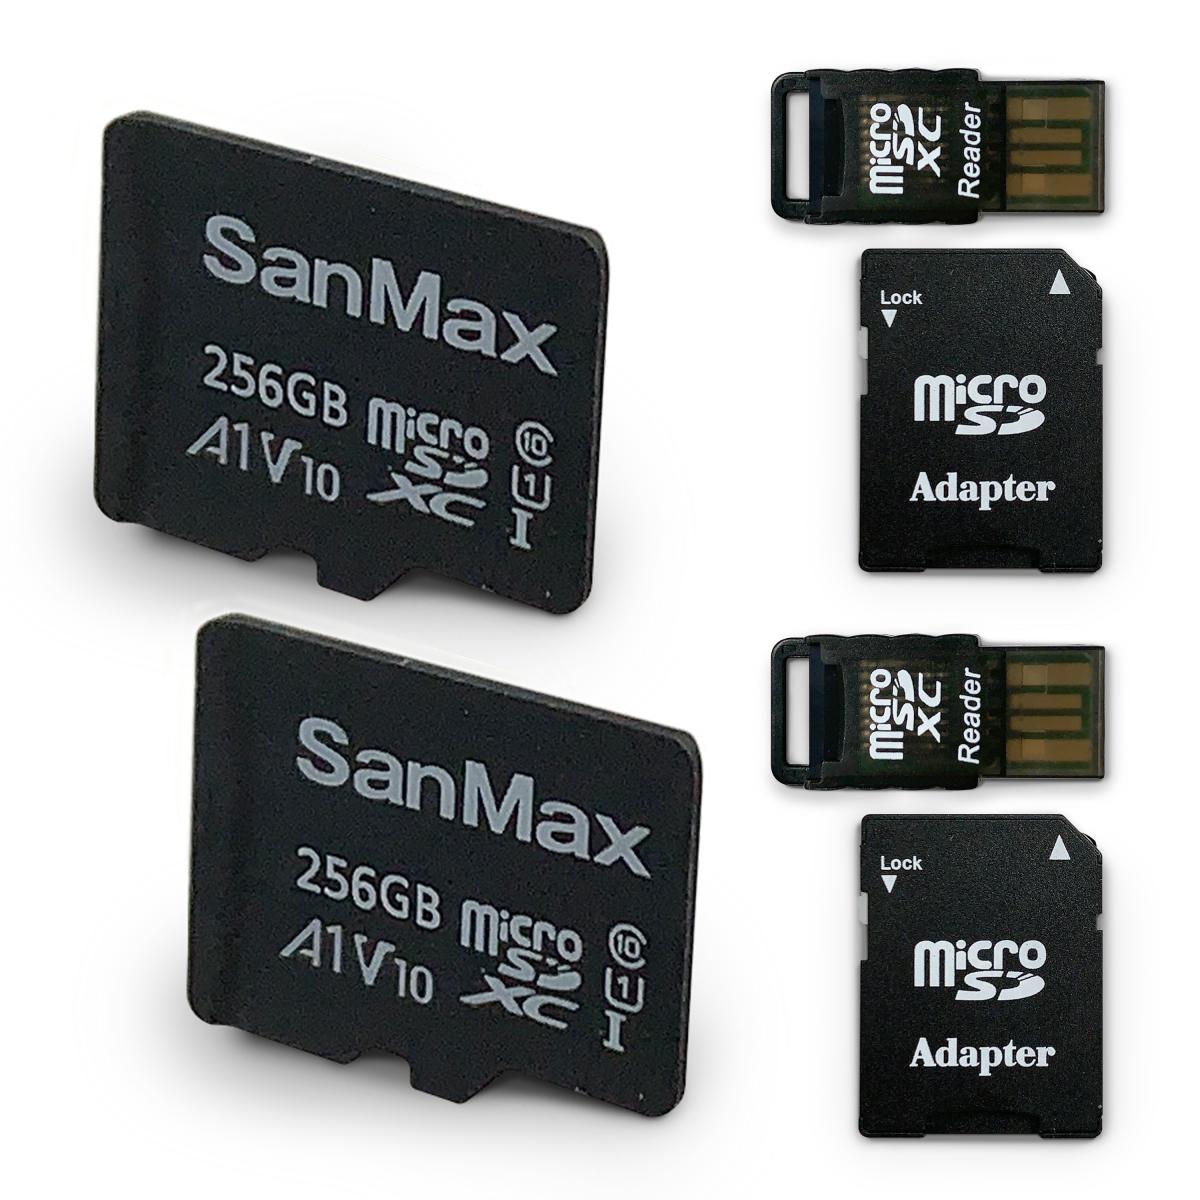 SanMax microSDXC カード 256GB V10 A1 3-IN-1 2個セット